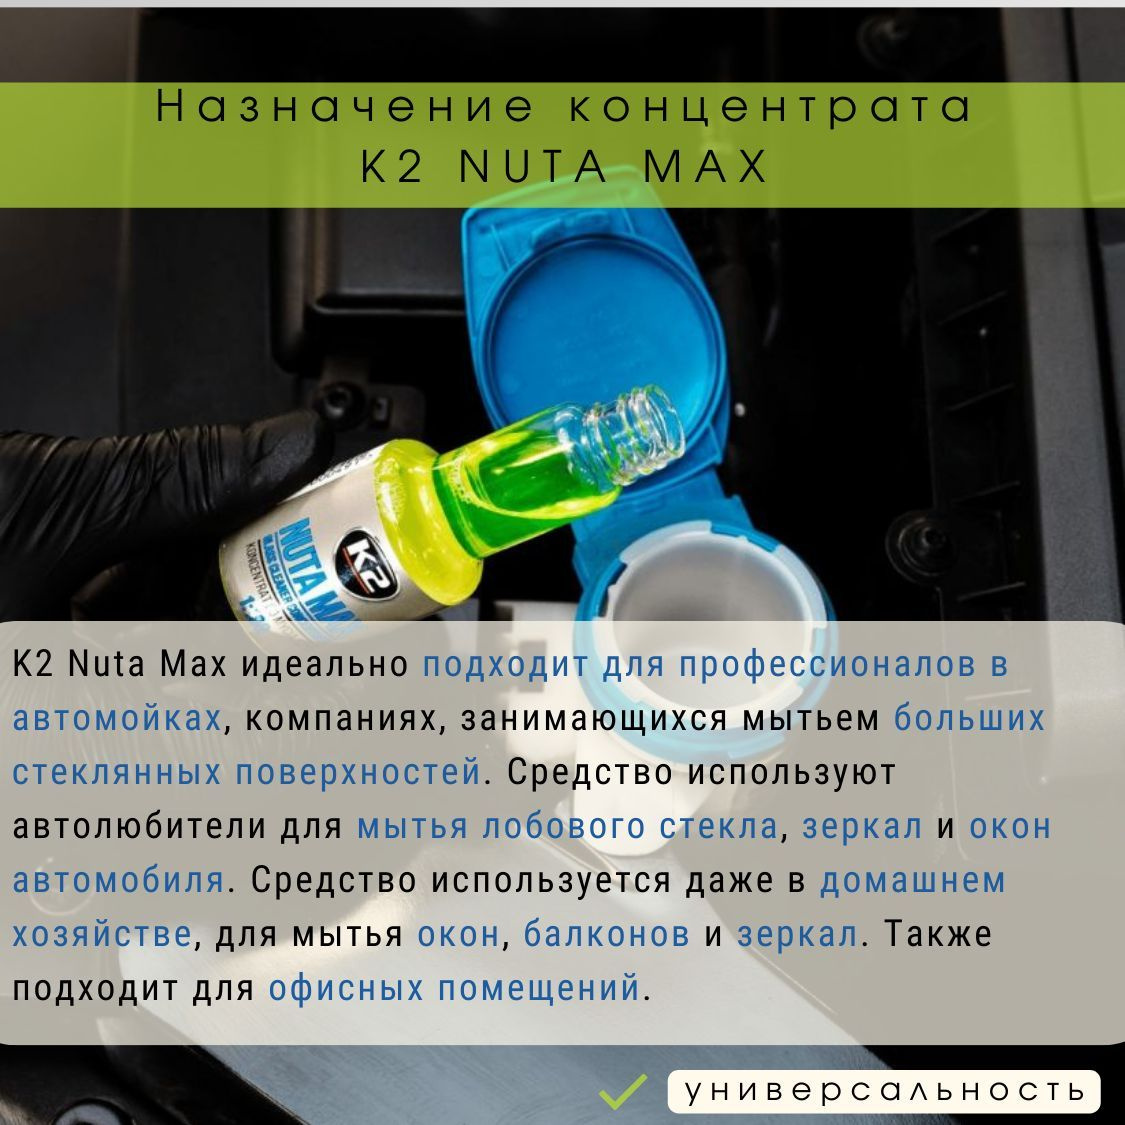 K2 Nuta Max - идеальное решение для самых требовательных задач. Он подходит для автомоек, помогая обеспечивать безупречную чистоту стекол на автомобилях для удовлетворения клиентов. Этот продукт также эффективен для использования в промышленных компаниях, где нужно мыть большие стеклянные поверхности, так как он справляется с крупными загрязнениями и поддерживает внешний вид. Кроме того, в домашнем хозяйстве K2 Nuta Max помогает легко и быстро чистить душевые кабины, зеркала и окна, обеспечивая кристальную чистоту.